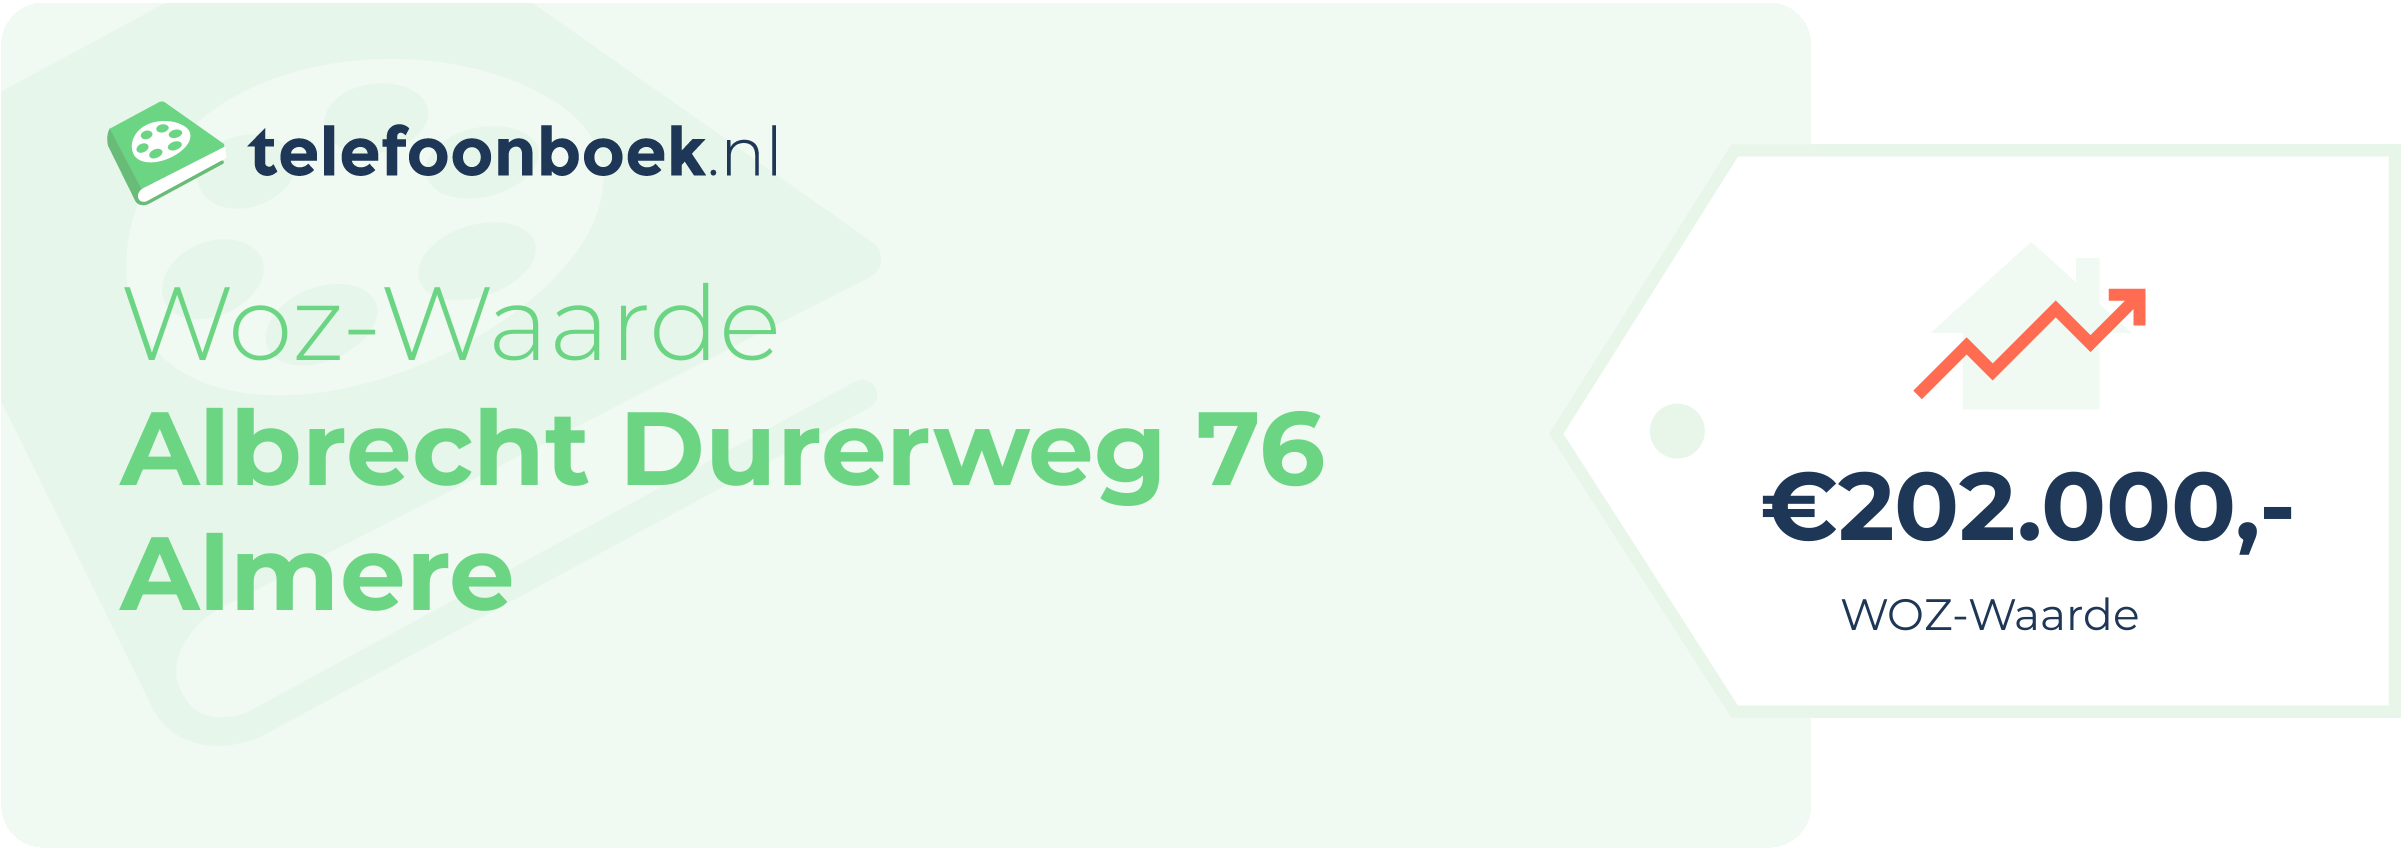 WOZ-waarde Albrecht Durerweg 76 Almere